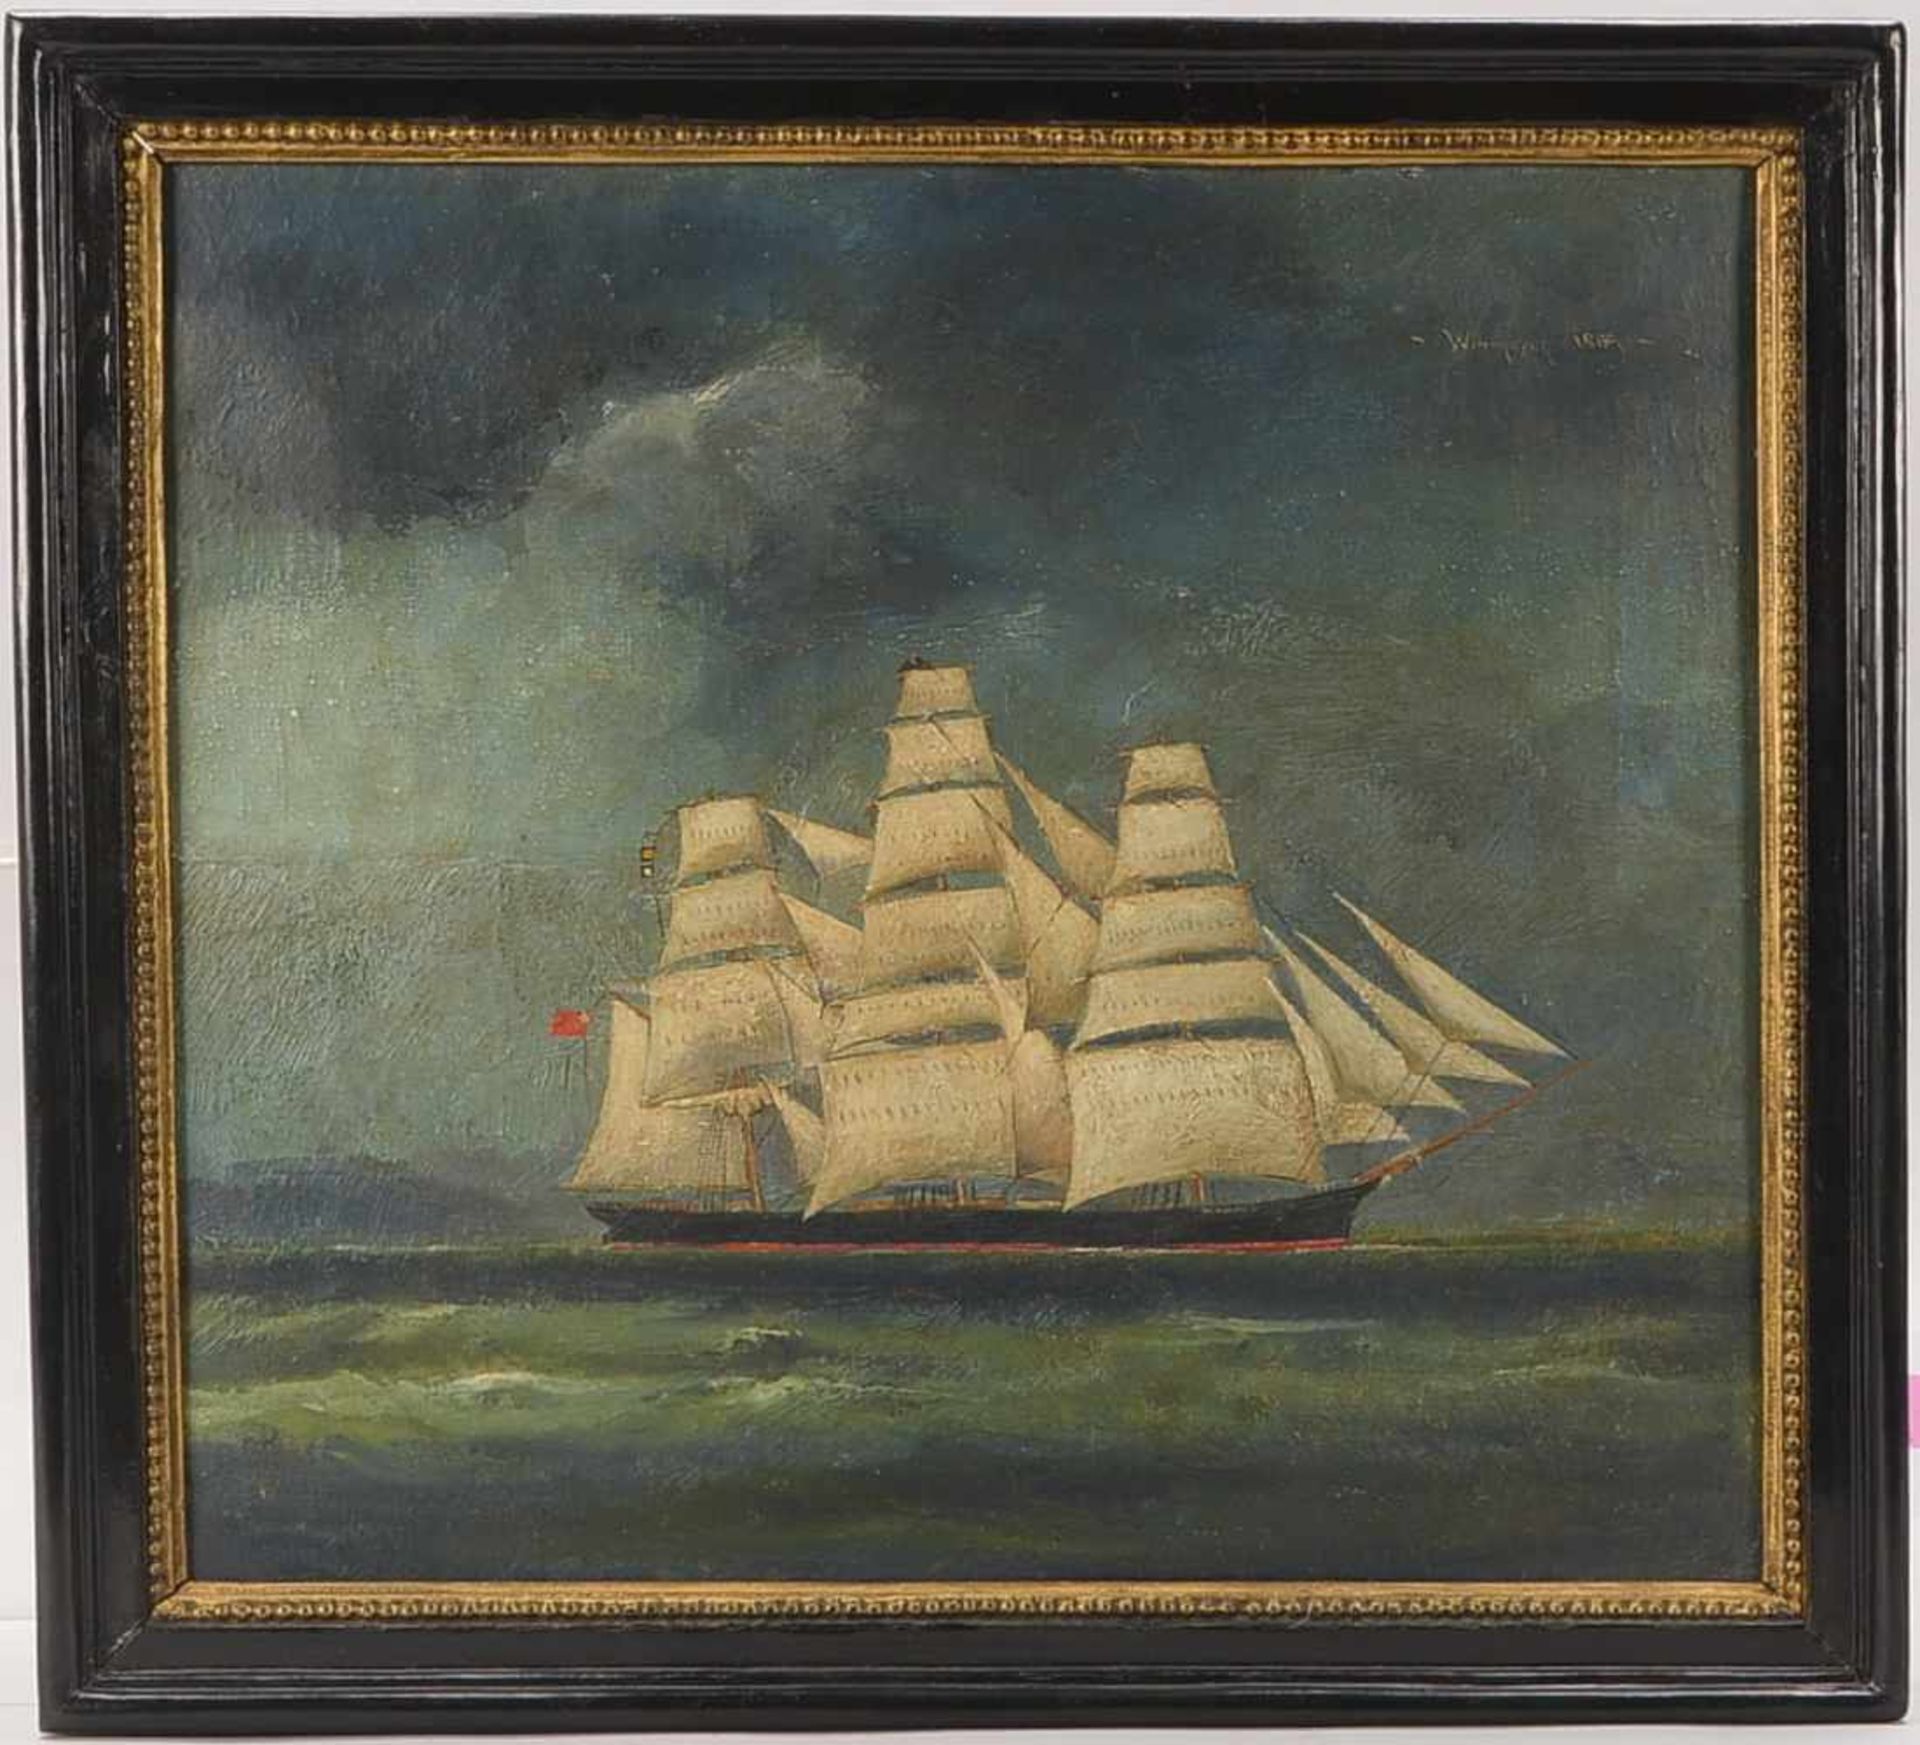 Gemälde (Kapitänsbild), 'Windhover 1869' - unter britischer/kanadischer Fahne, Öl/Lw, oben rechts